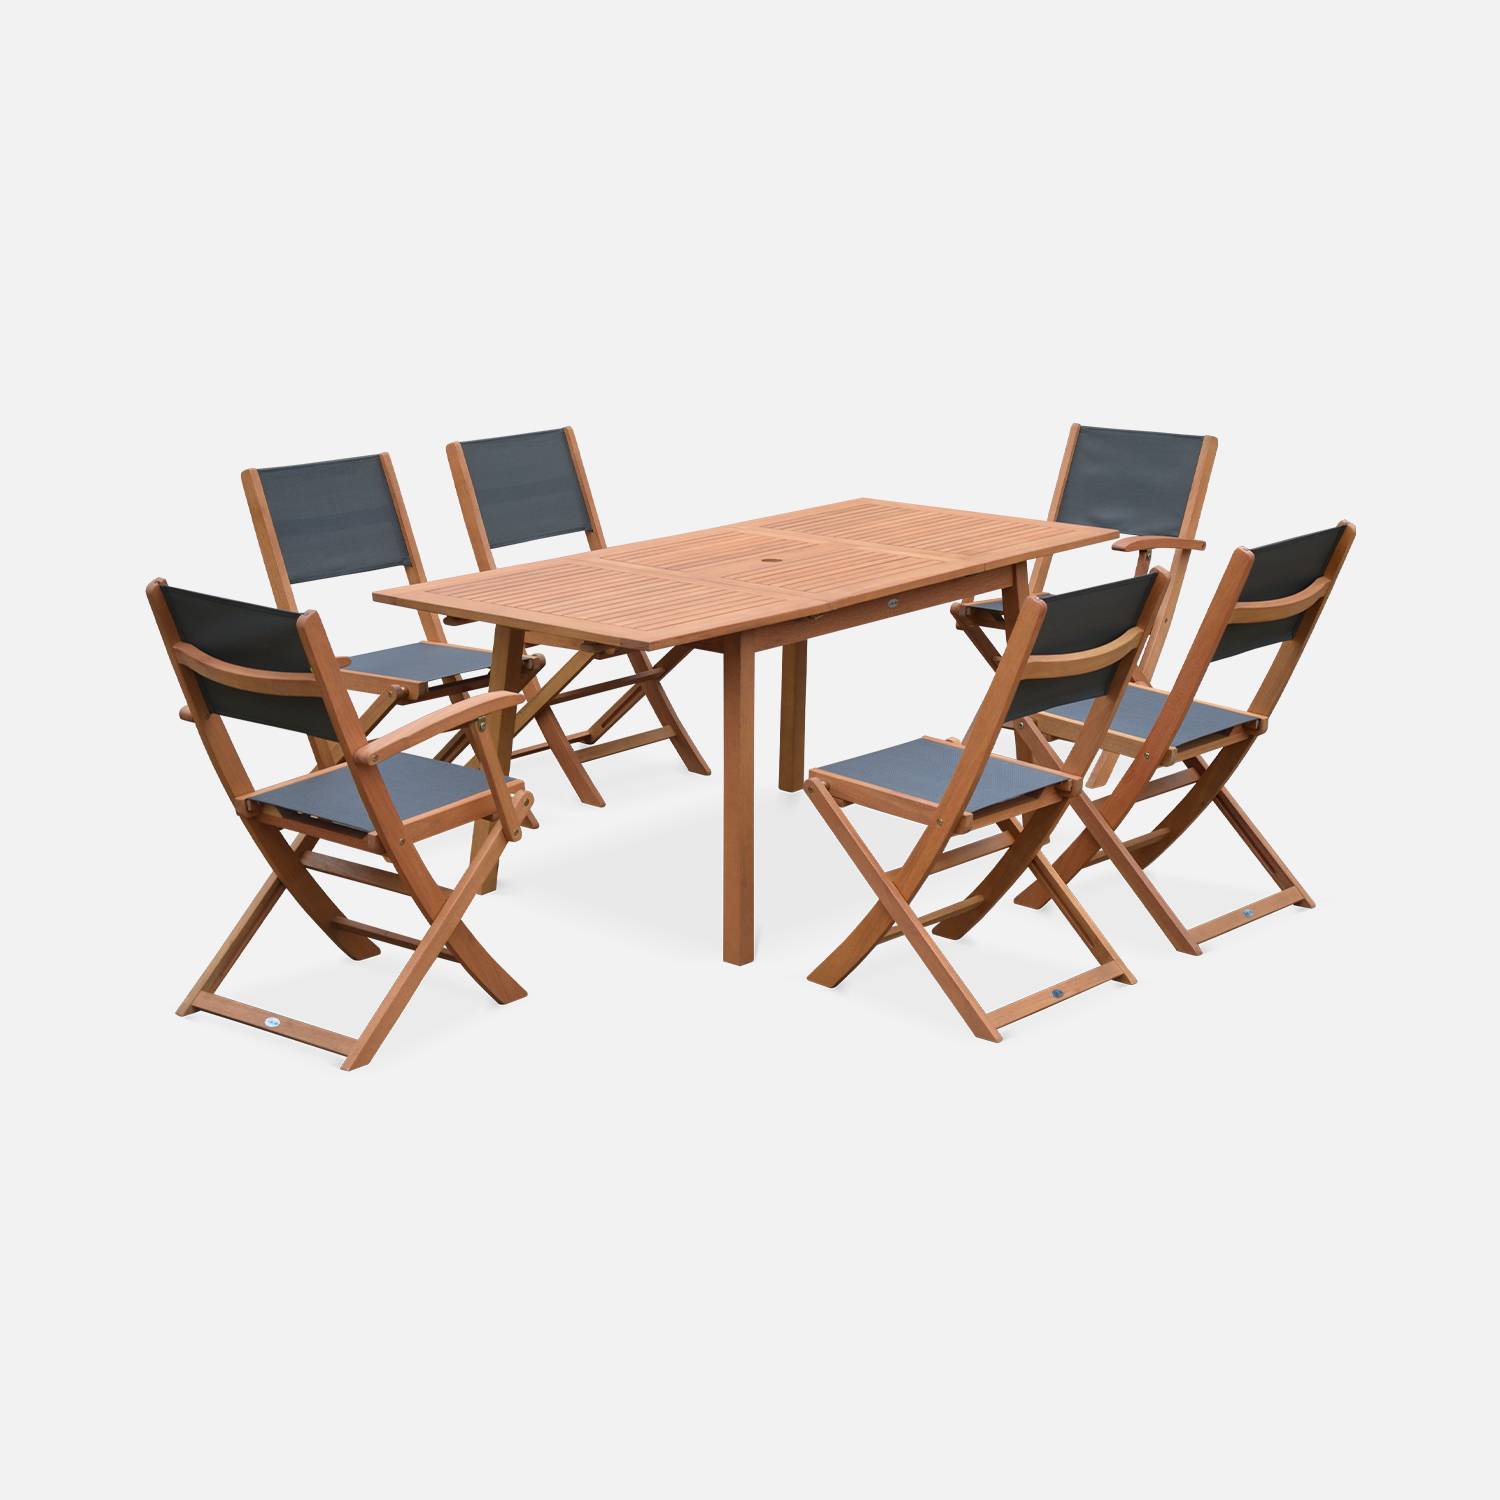 Ausziehbare Gartenmöbel aus Holz - Almeria - Tisch 120/180 cm mit Verlängerung, 2 Sesseln und 4 Stühlen aus geöltem FSC-Eukalyptusholz und anthrazitfarbenes Textilene Photo3